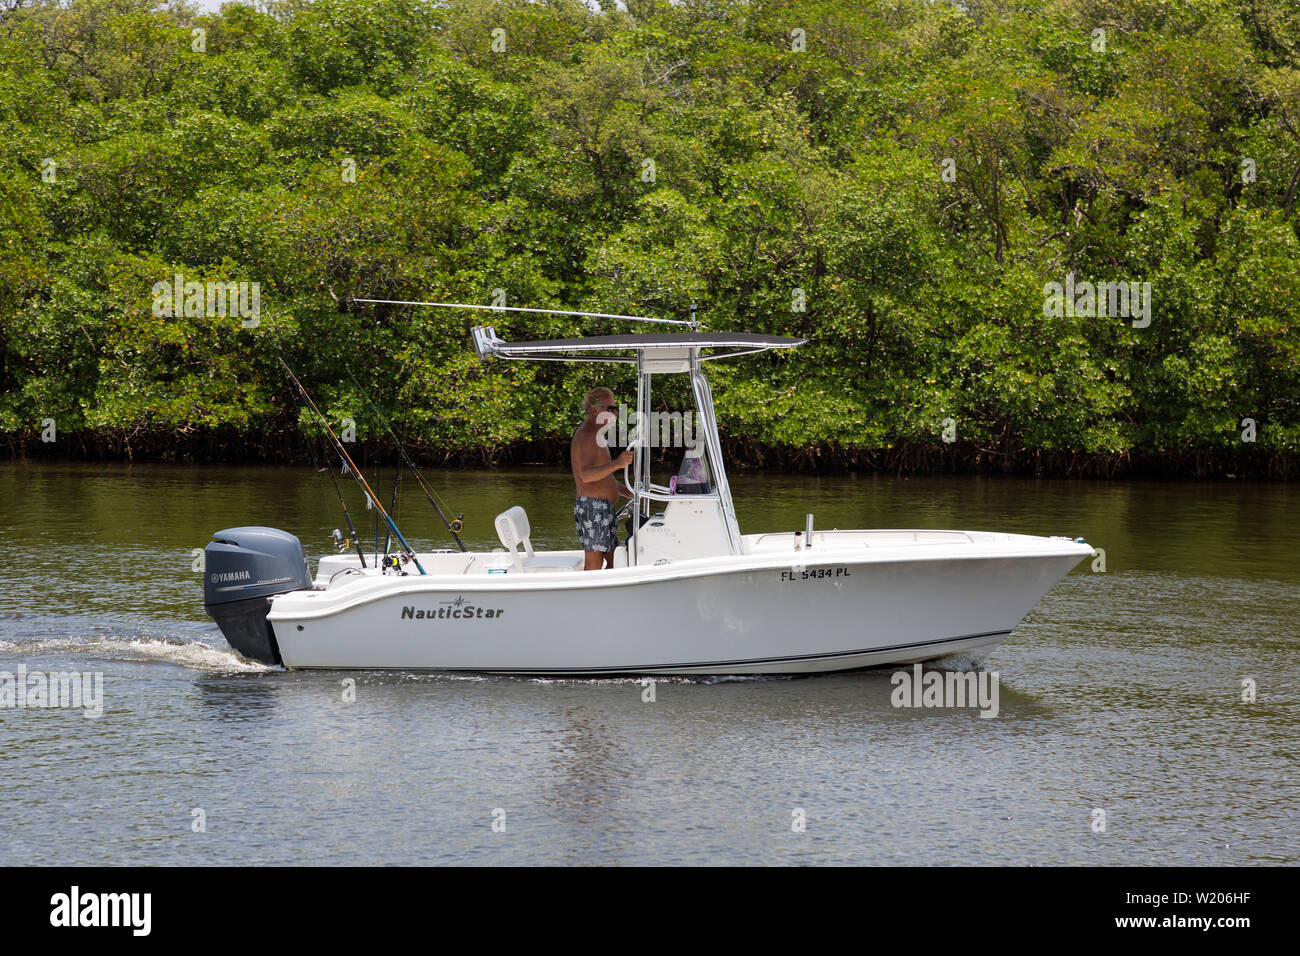 Un pêcheur pilote son bateau de pêche NauticStar à travers les eaux calmes de la voie navigable Intercoastal entre Boynton Beach et Ocean Ridge, Floride, États-Unis Banque D'Images